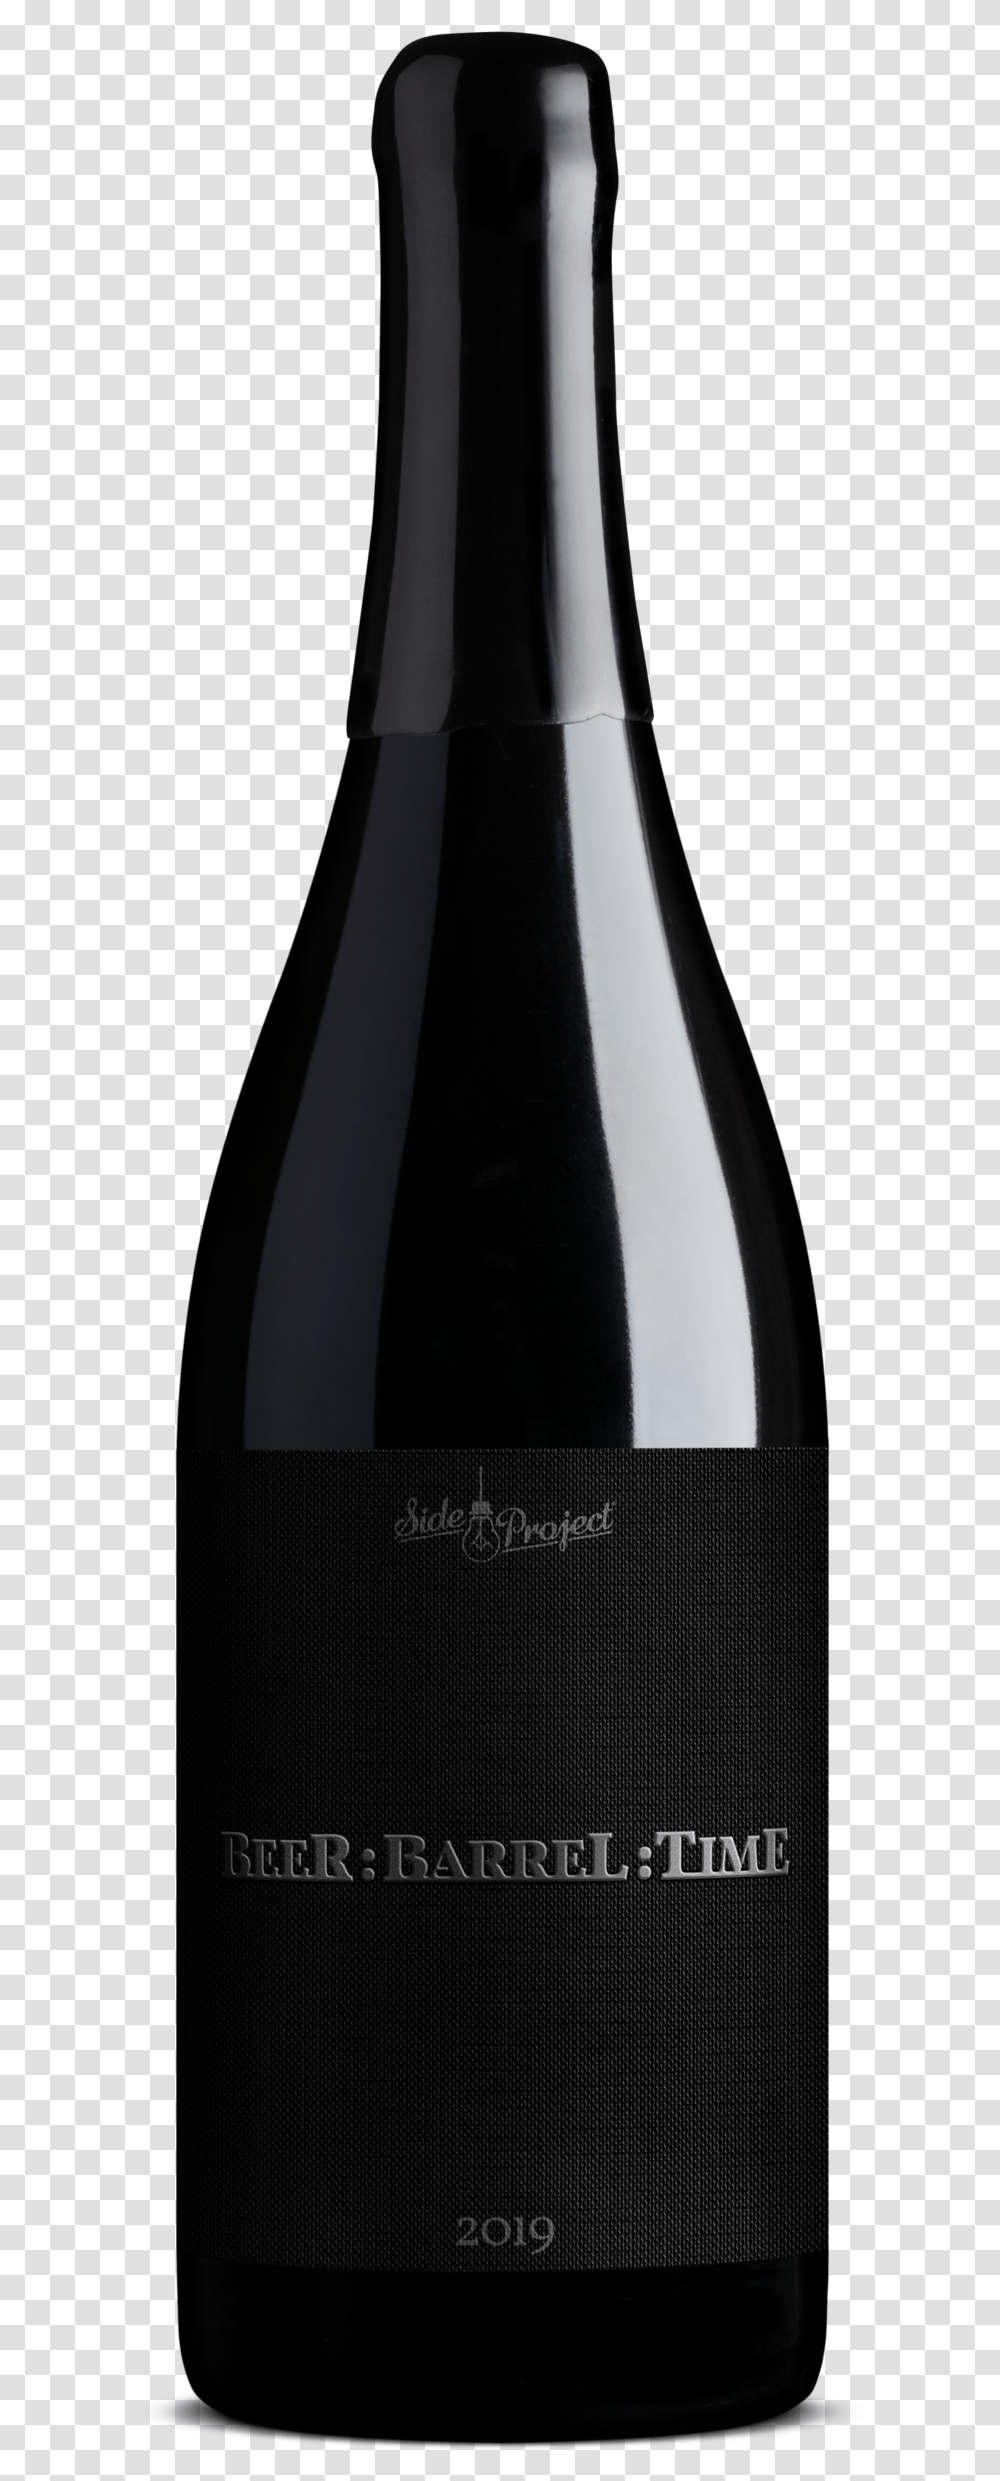 Sideproject Beerbarreltime 2019 750ml Wine Bottle, Alcohol, Beverage, Drink, Red Wine Transparent Png